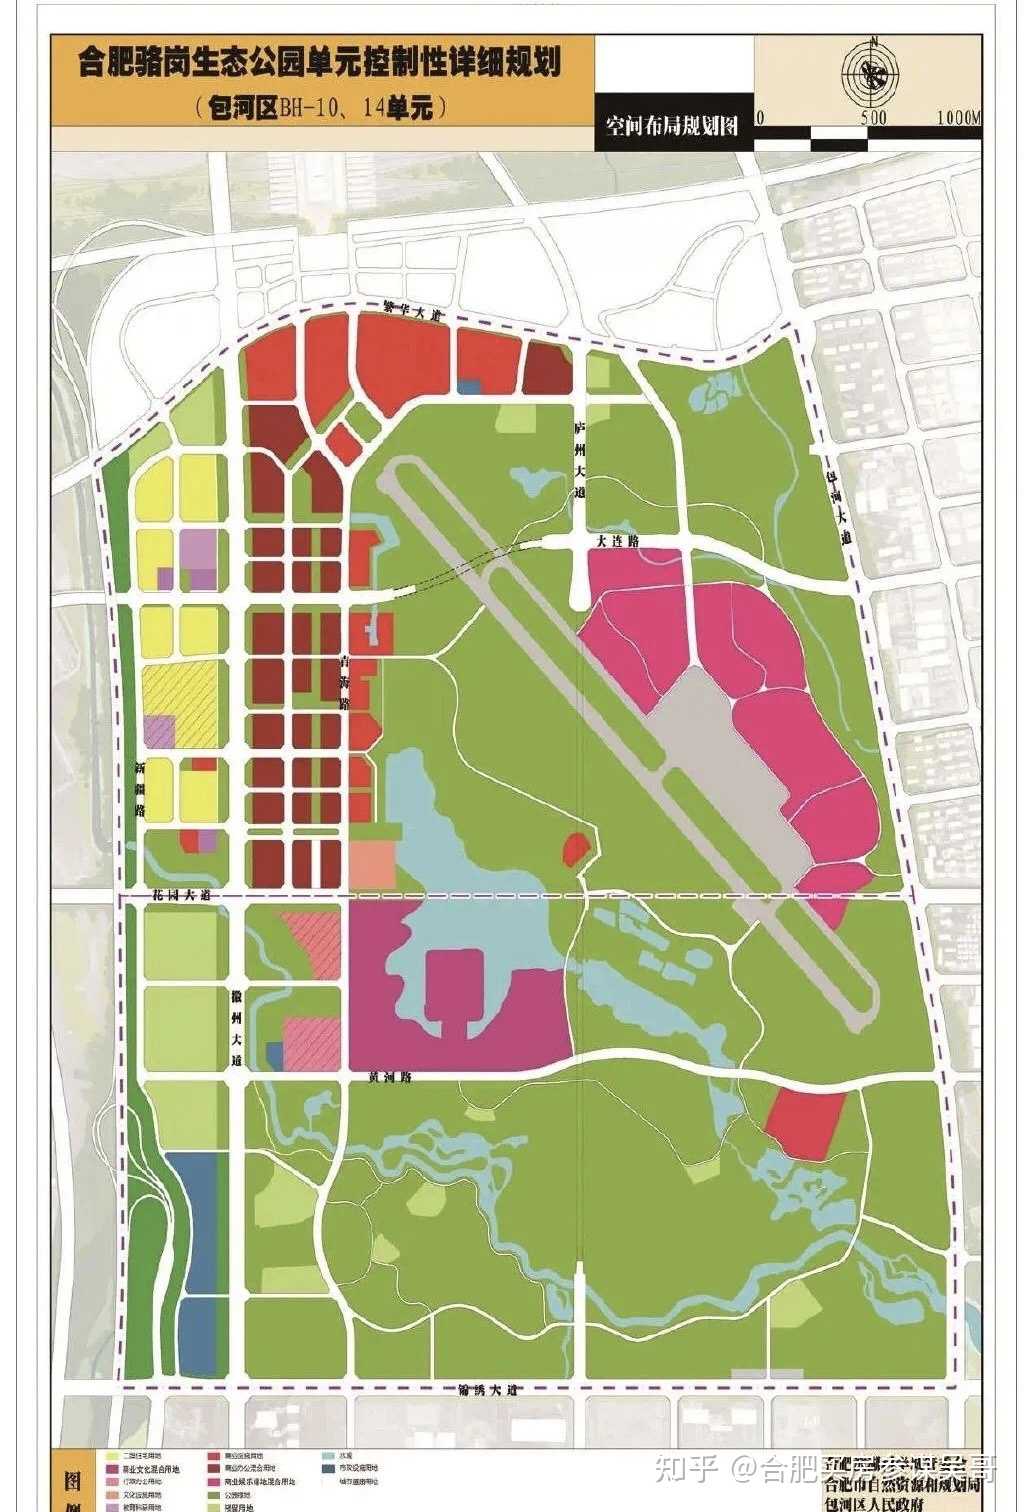 合肥骆岗生态公园cbd地块规划公示!